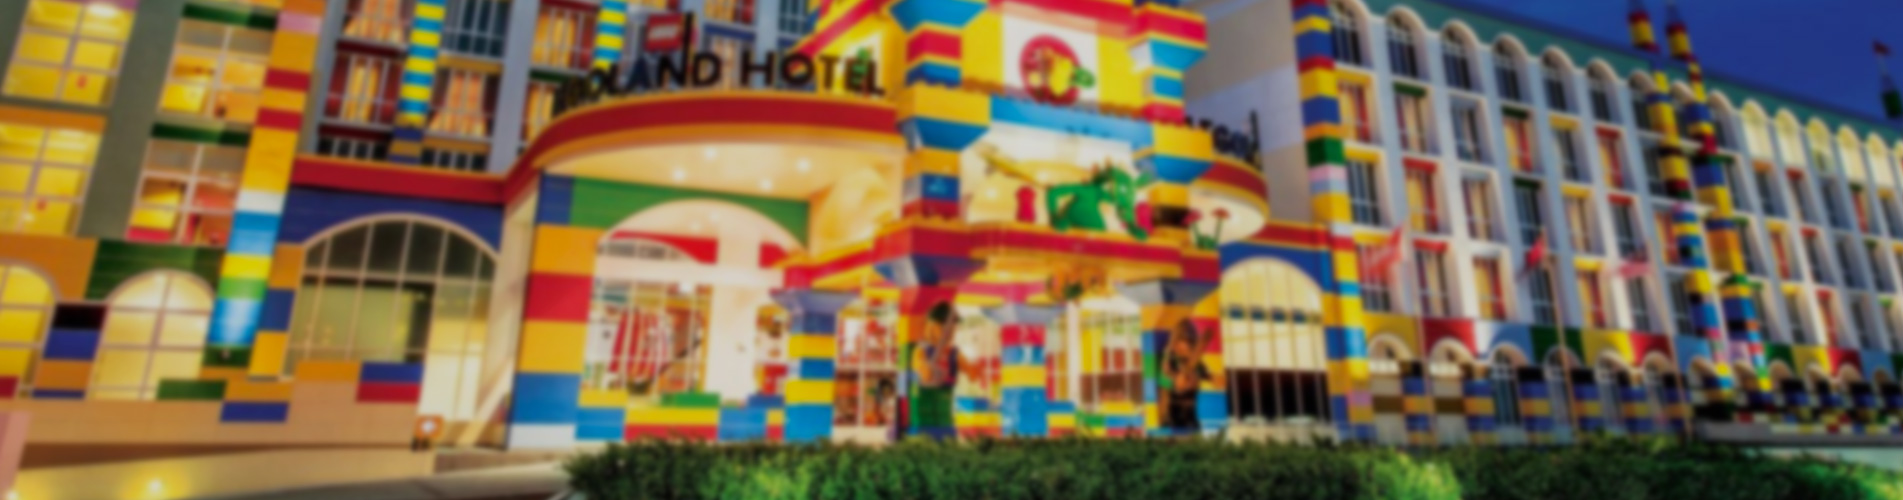 【酷玩樂園】新山 樂高樂園 Legoland 3日2夜自由行套票